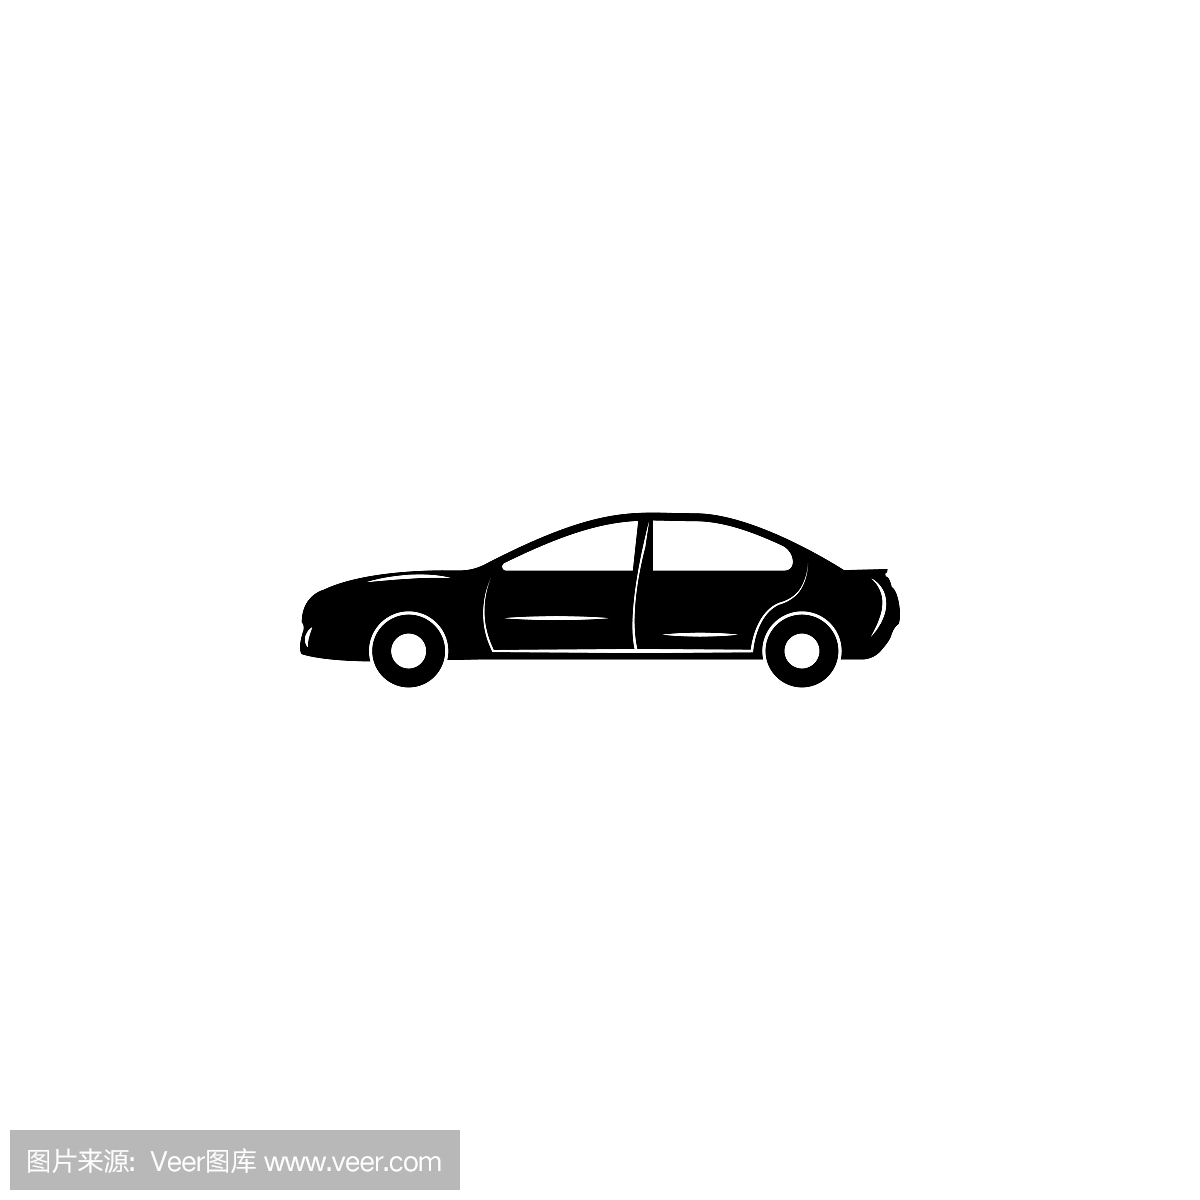 汽车轿车图标。汽车类型简单的图标。运输元素